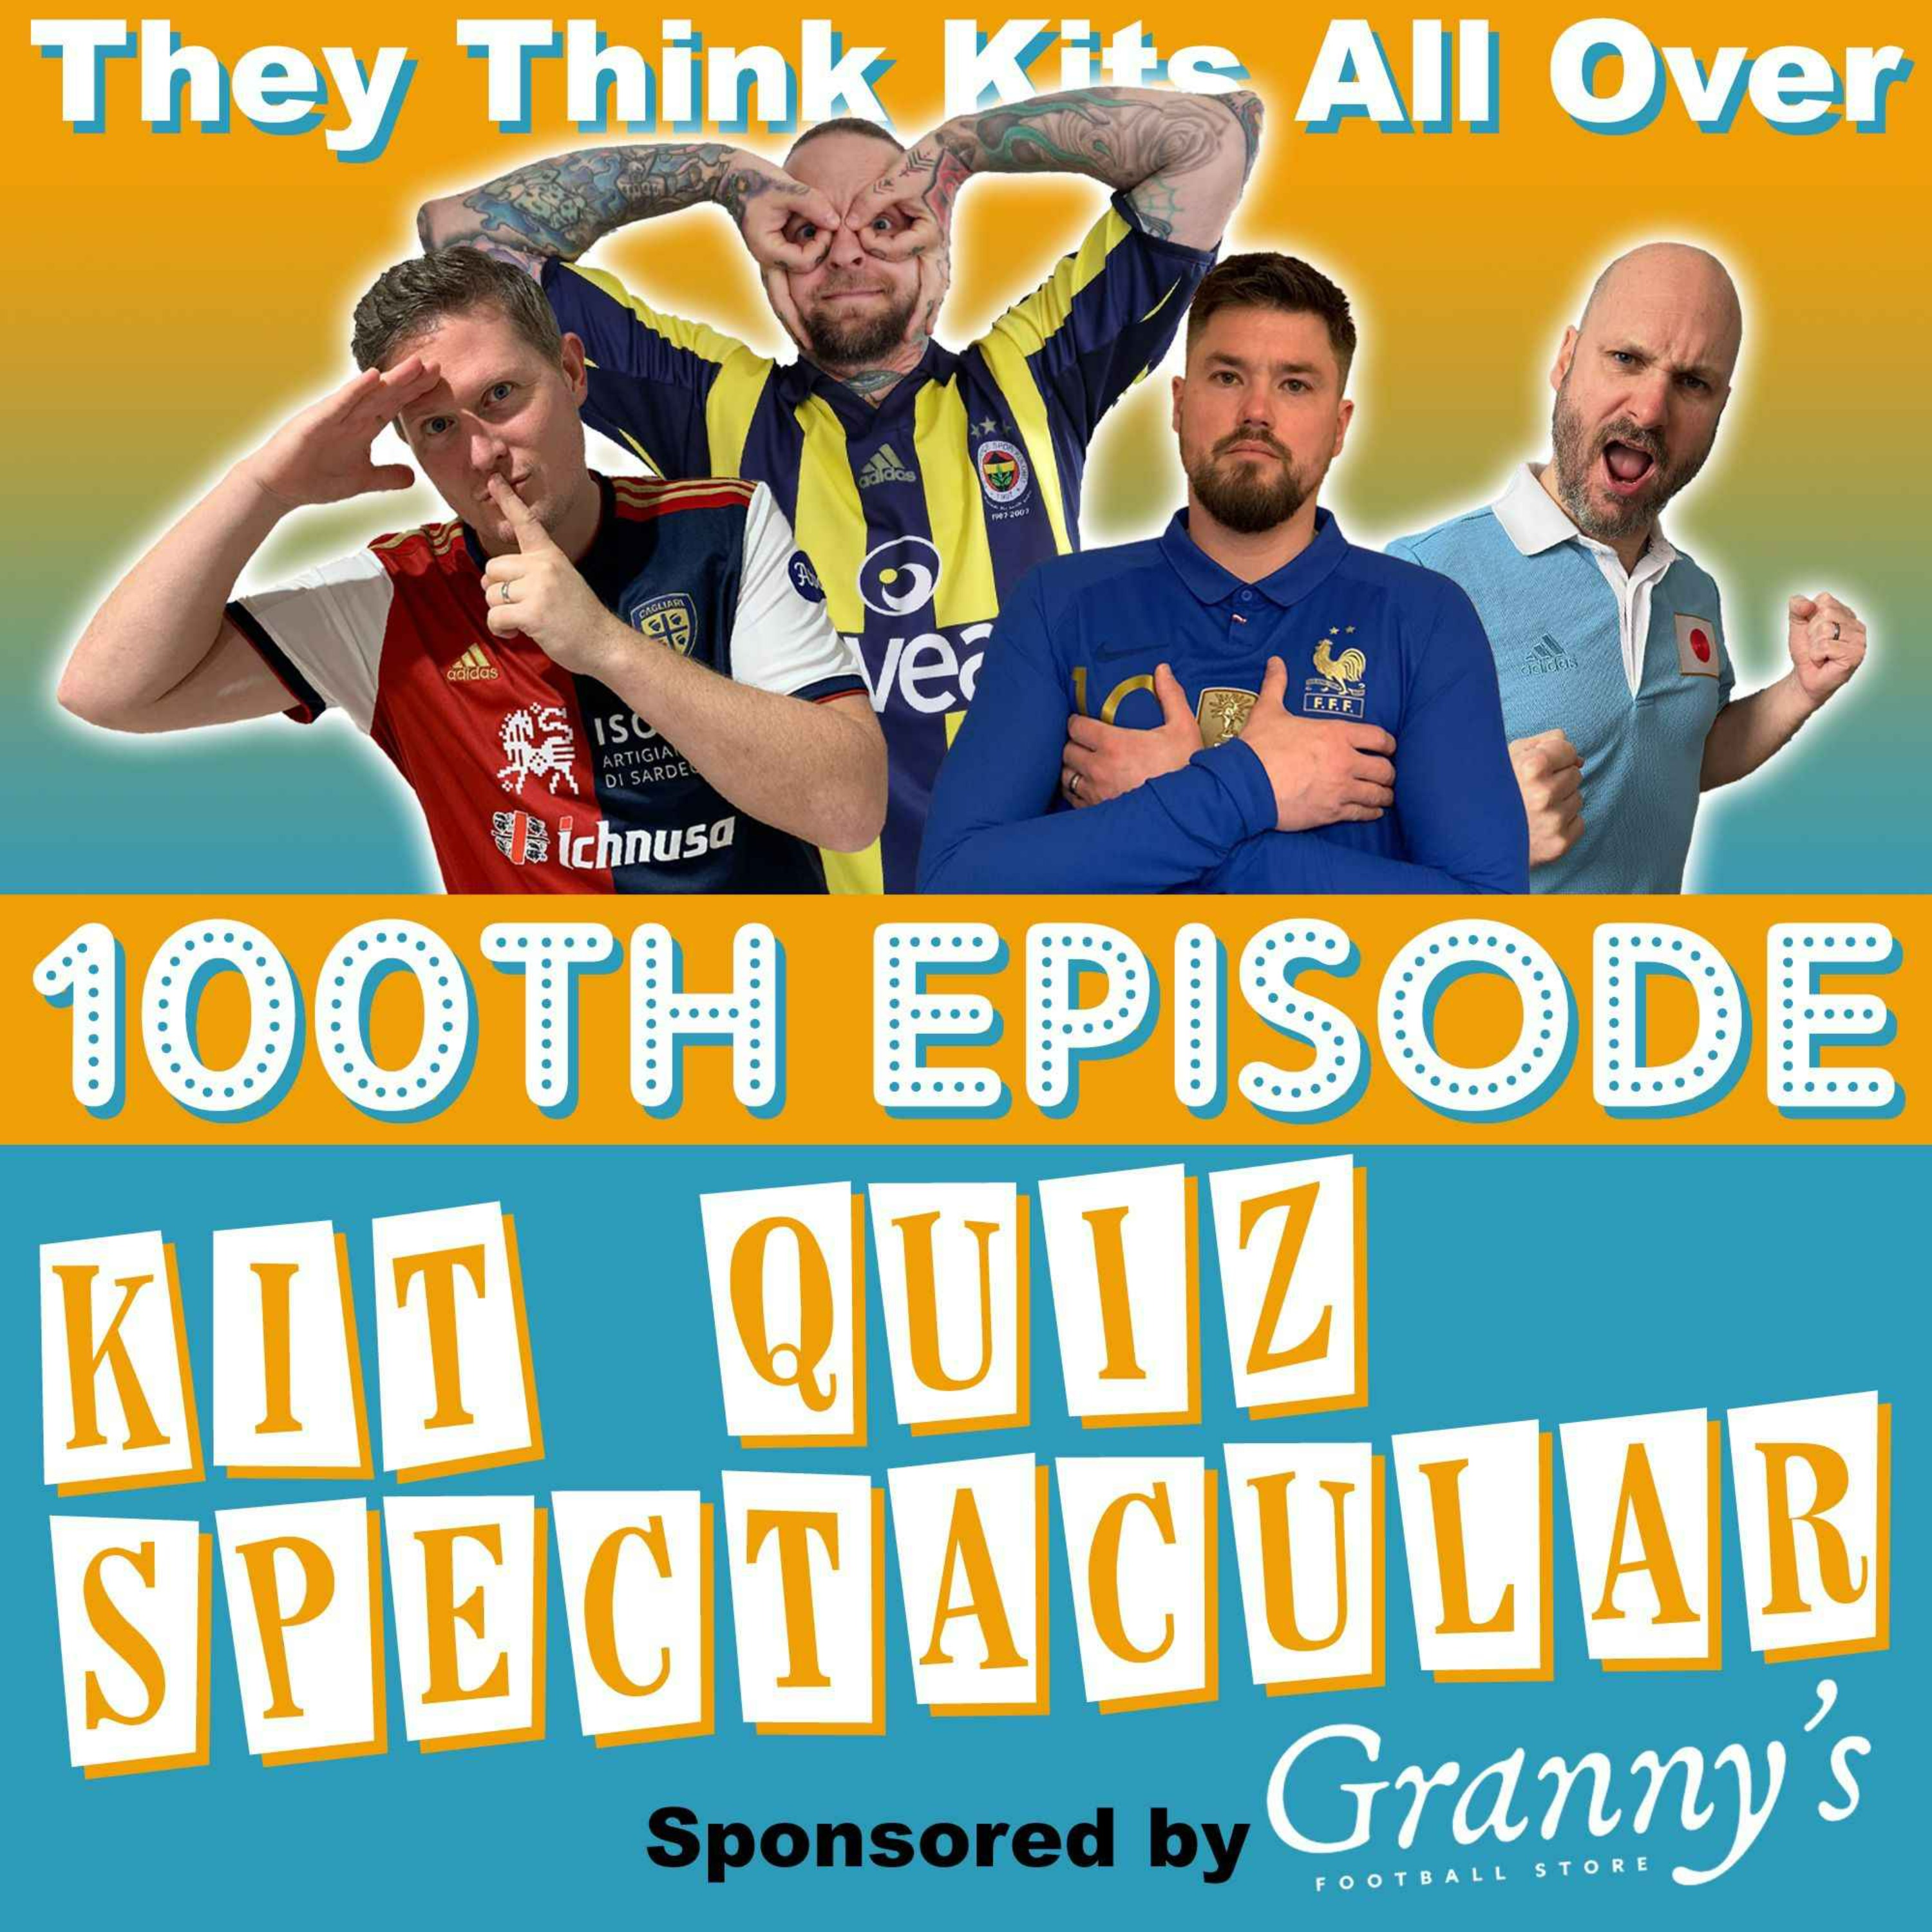 Episode 100 - Kit Quiz Spectacular!